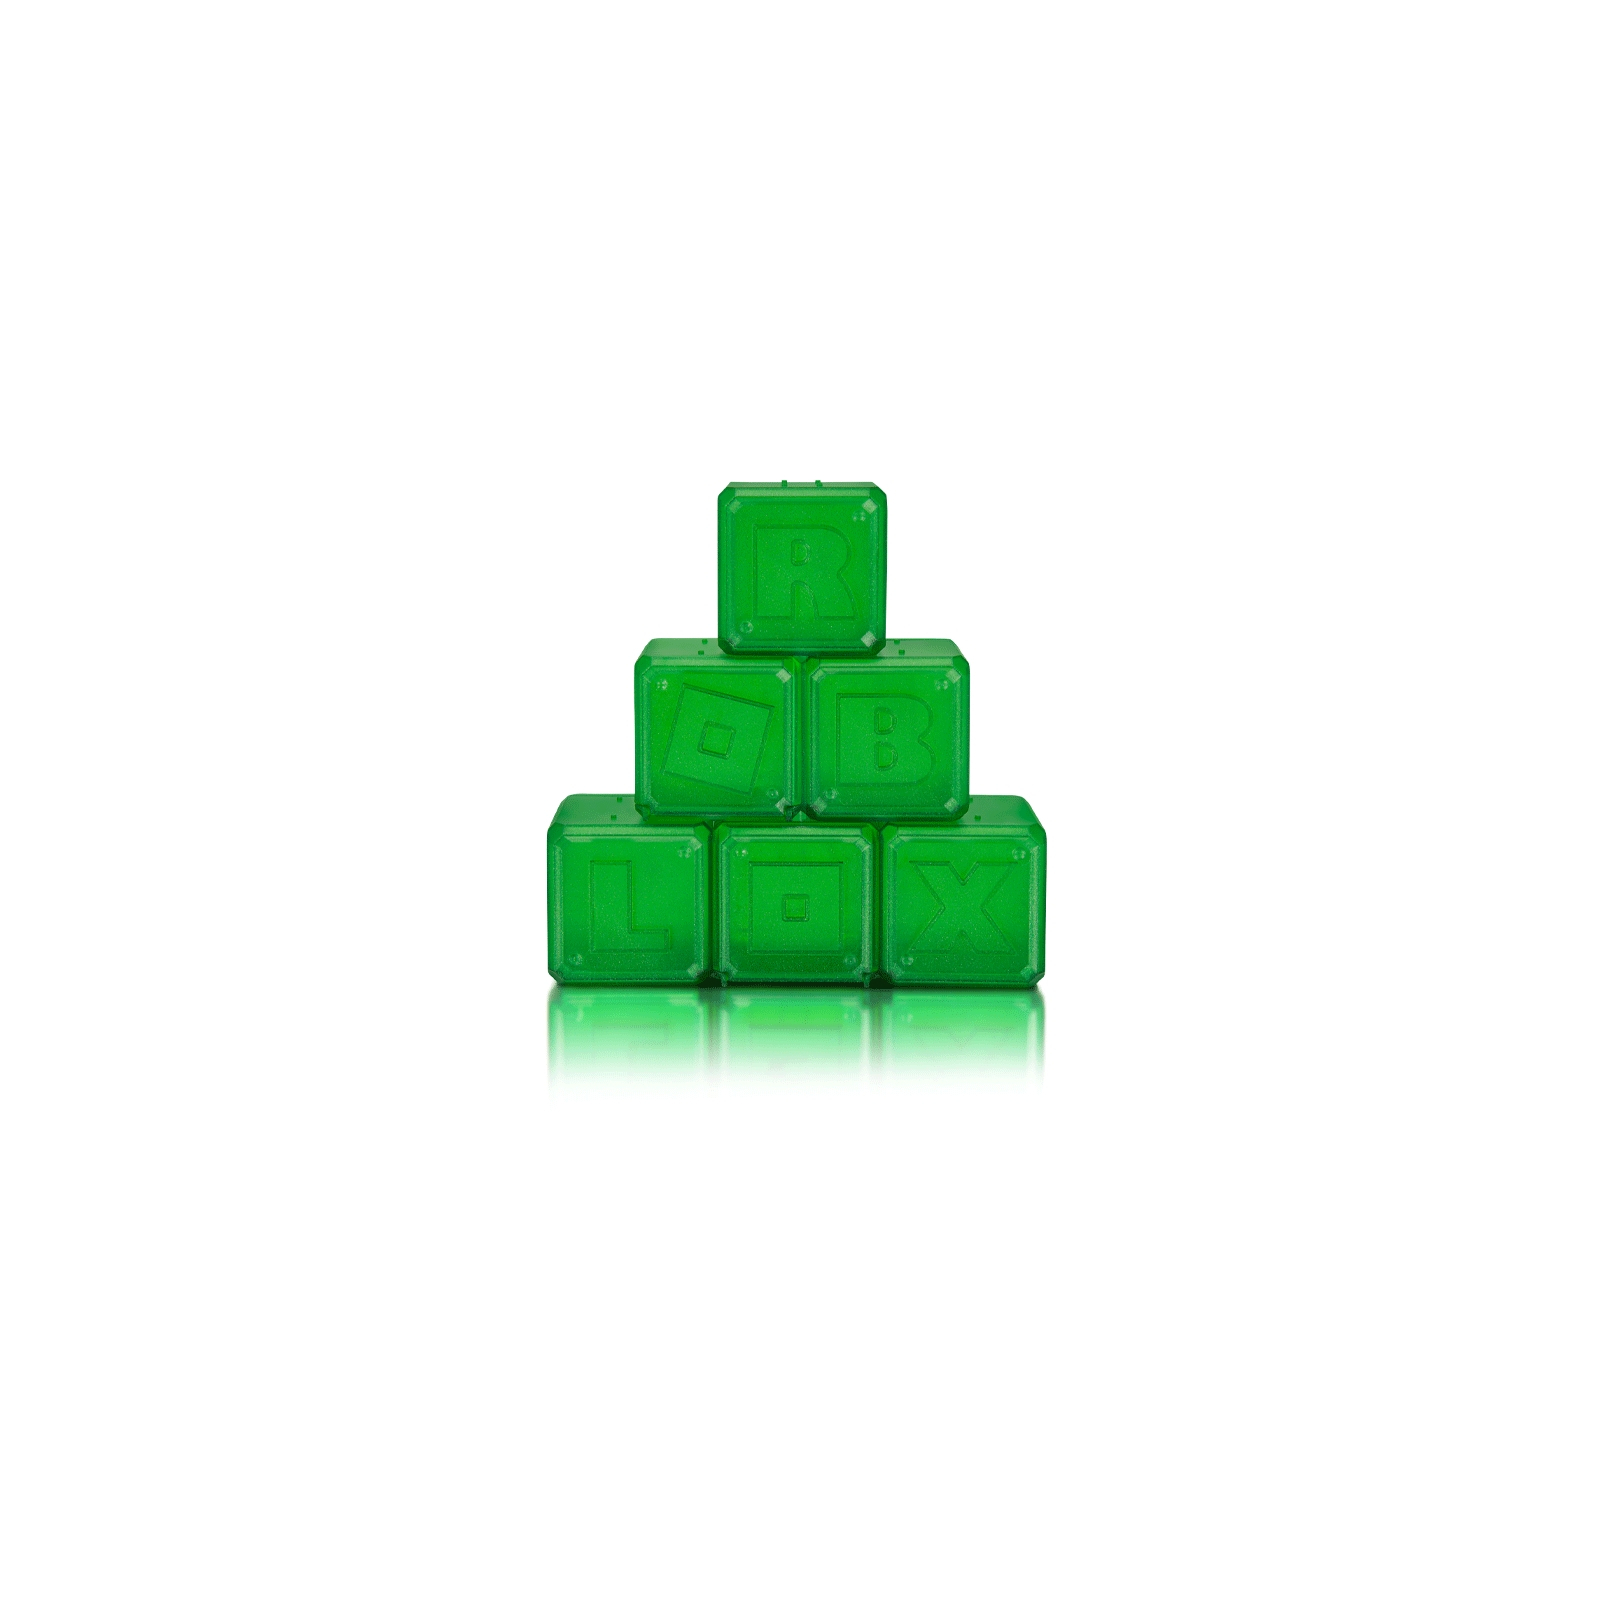 Фигурка для геймеров Jazwares Roblox Mystery Figures Emerald S4 (ROG0104) изображение 2